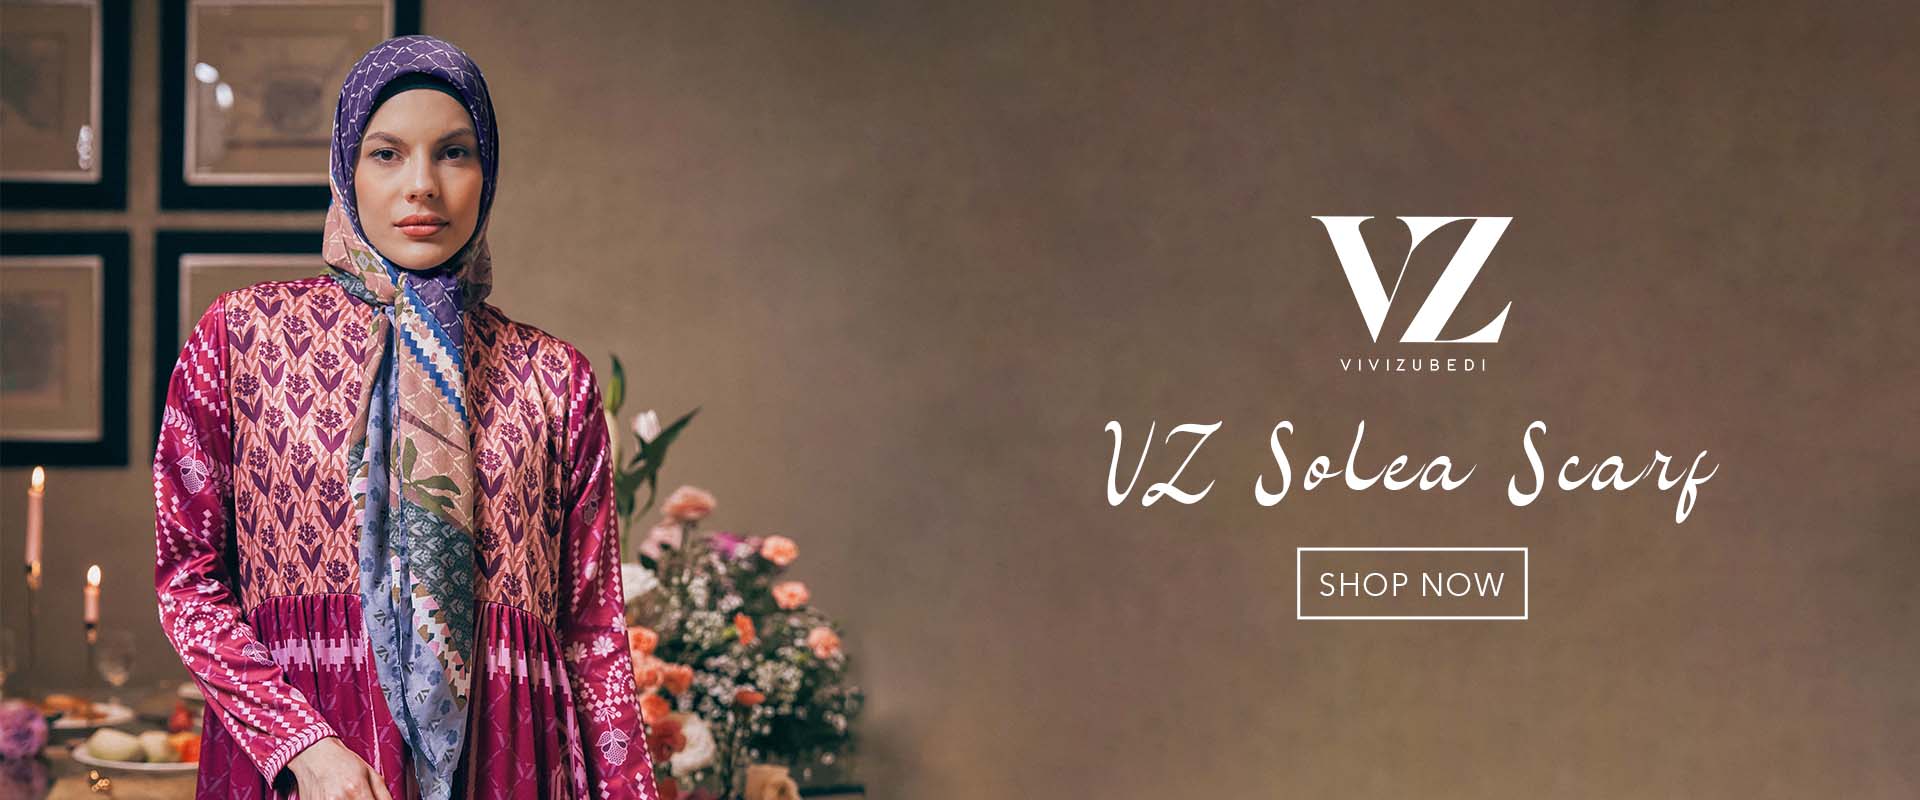 Banner Website VZ Solea Scarf